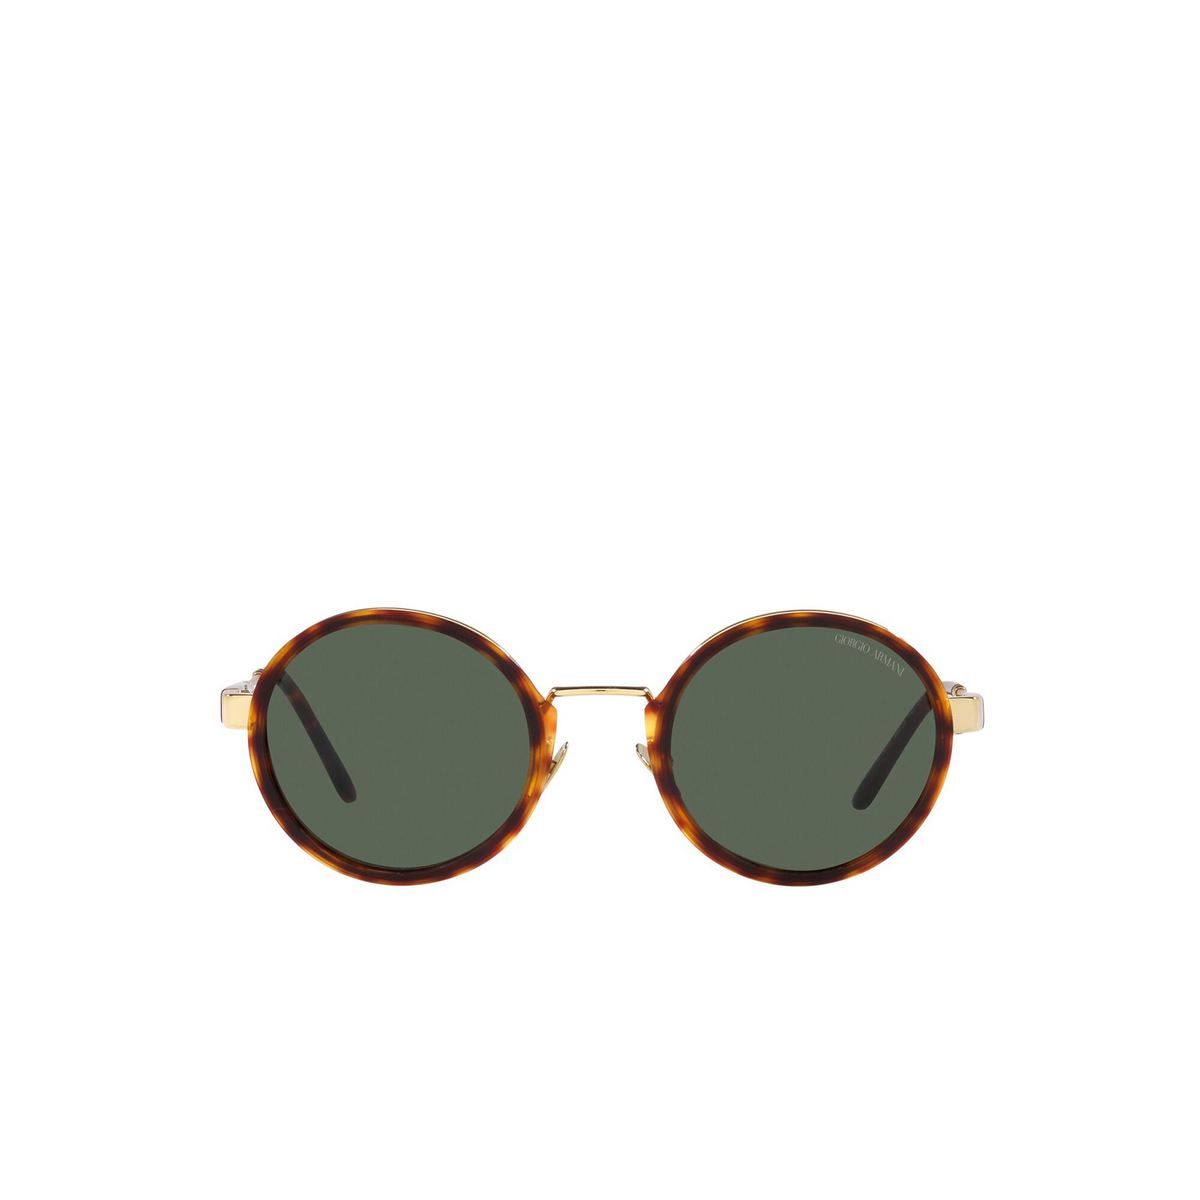 Giorgio Armani AR6133 Sunglasses 301371 Pale Gold/Tortoise - front view